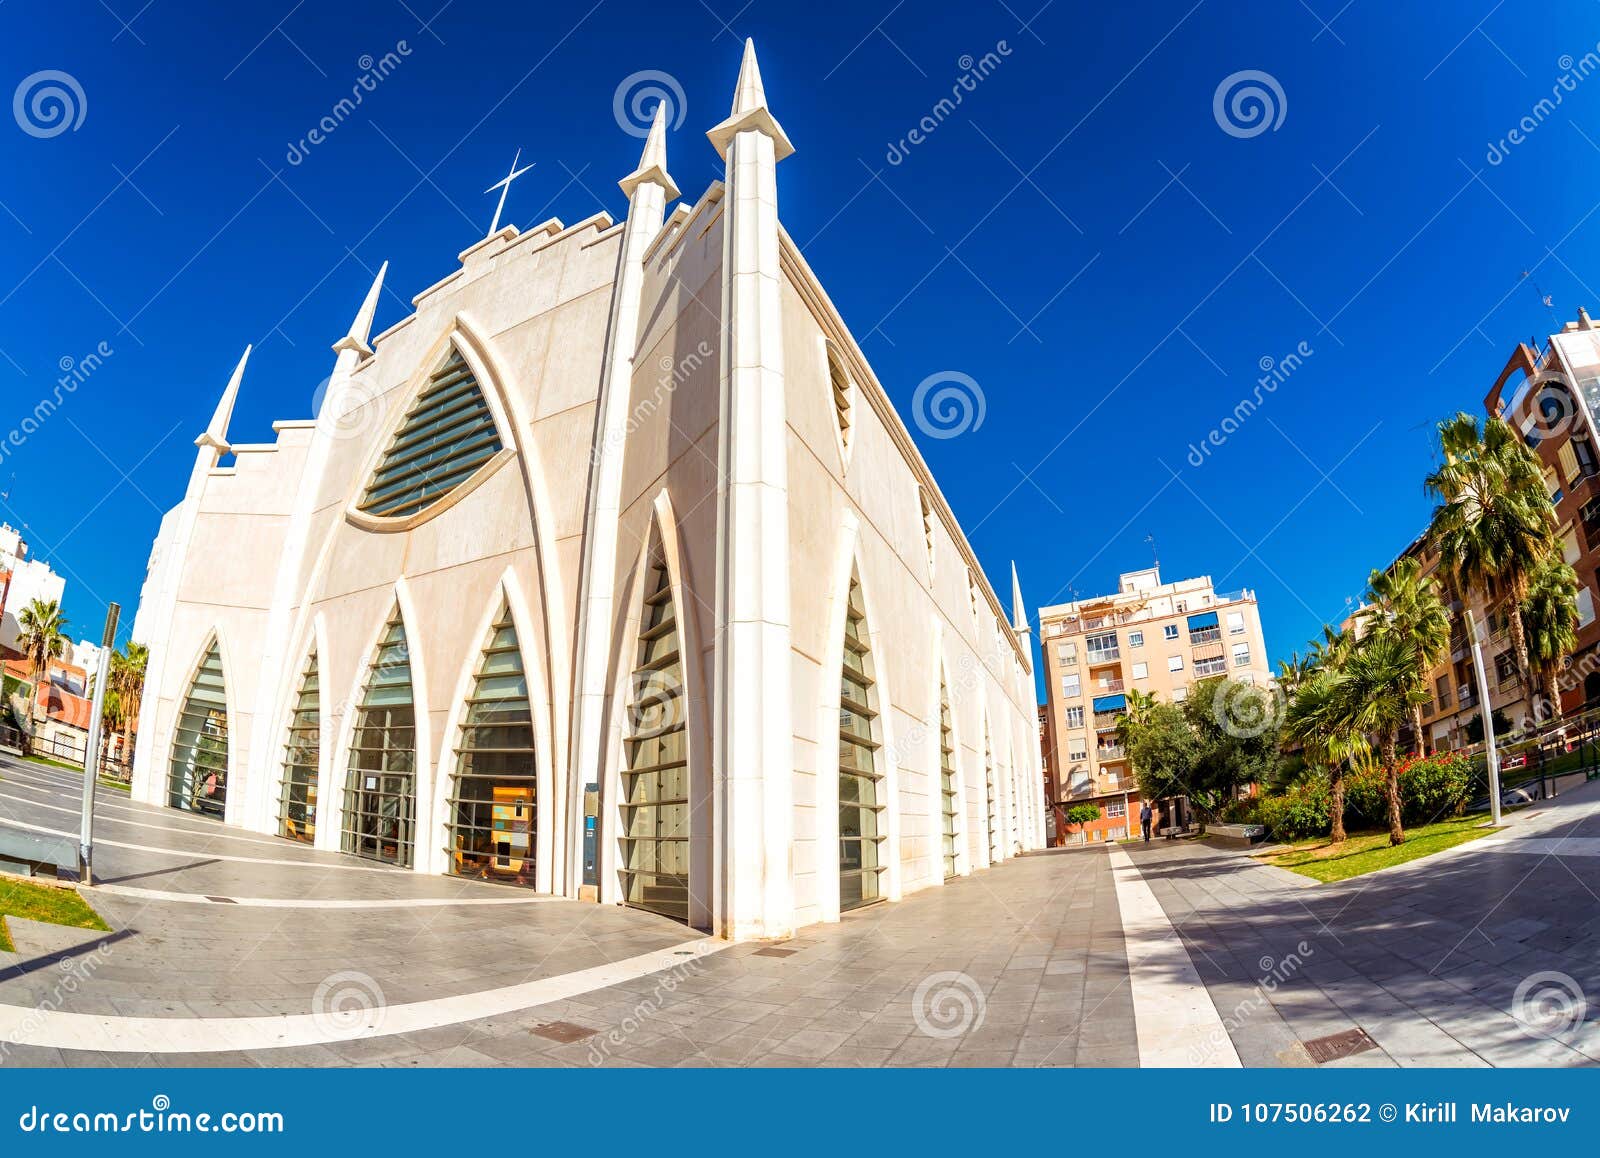 iglesia del sagrado corazon de jesus, plaza de oriente. torrevie